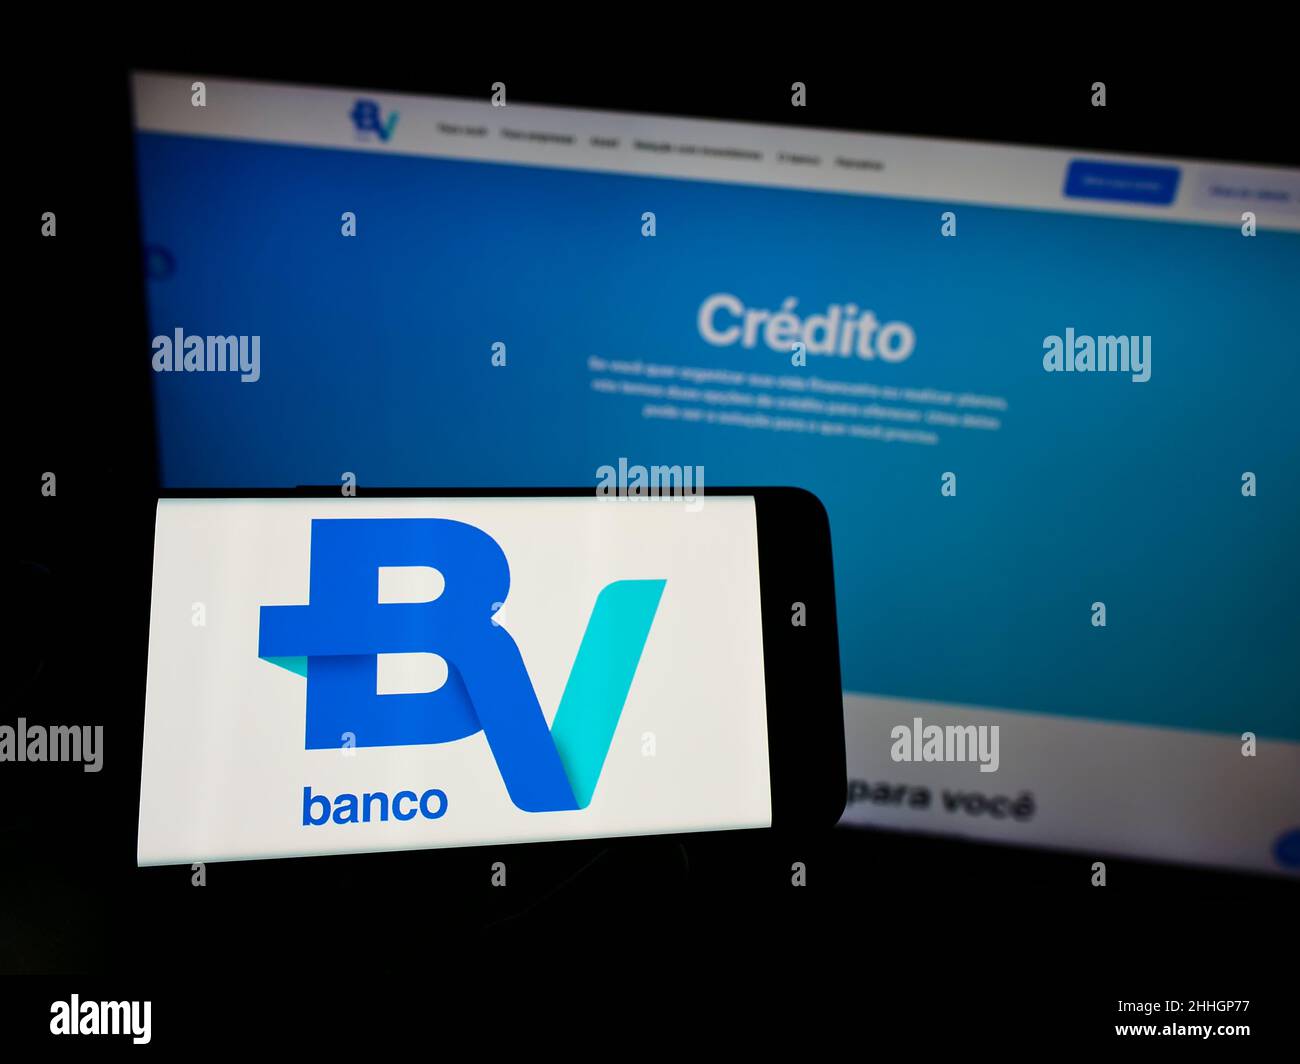 Personne tenant un téléphone portable avec le logo de la société brésilienne Banco Votorantim S.A. sur écran devant la page web d'affaires.Mise au point sur l'affichage du téléphone. Banque D'Images